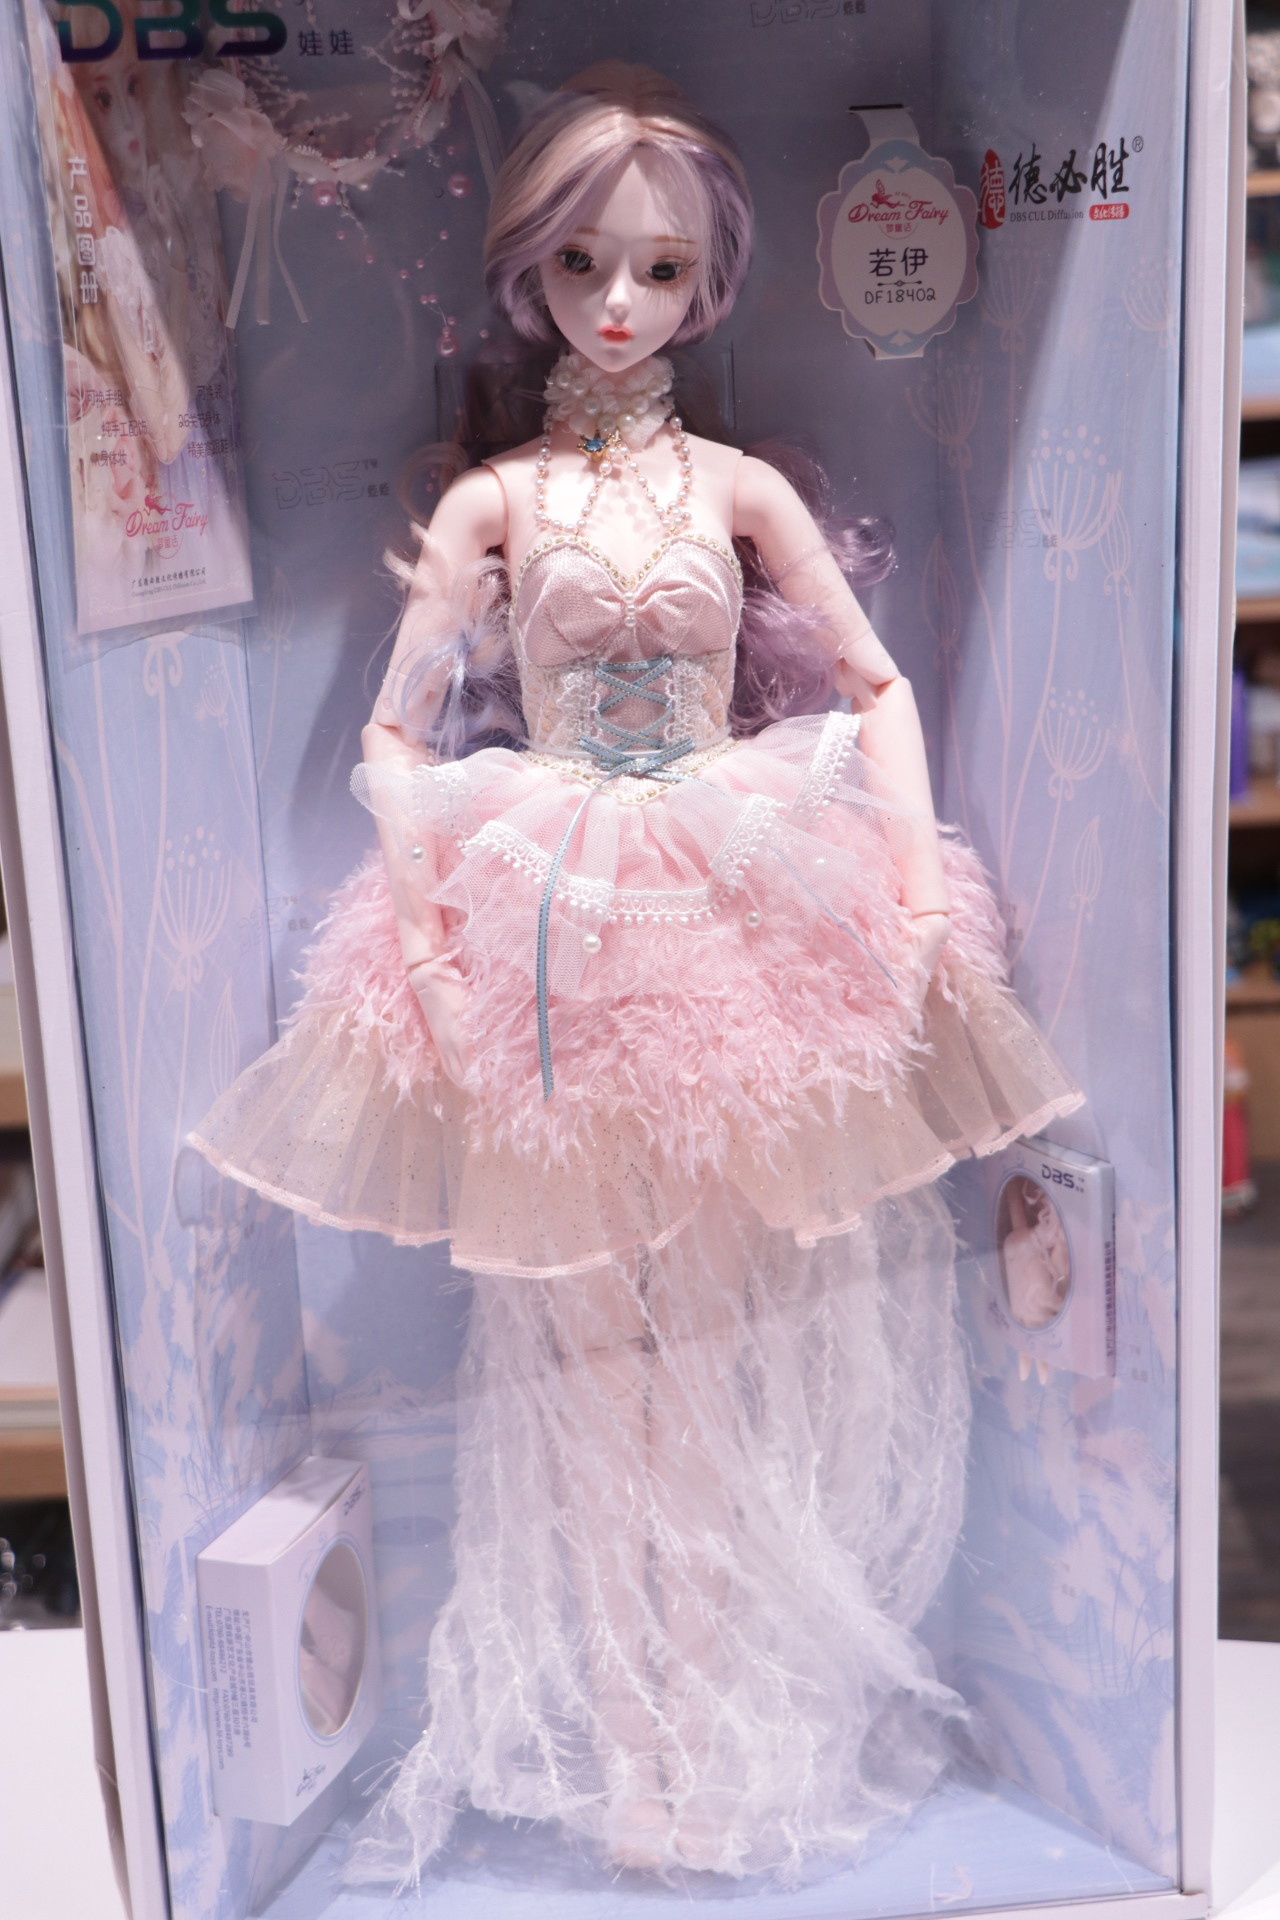 dream fairy bjd doll